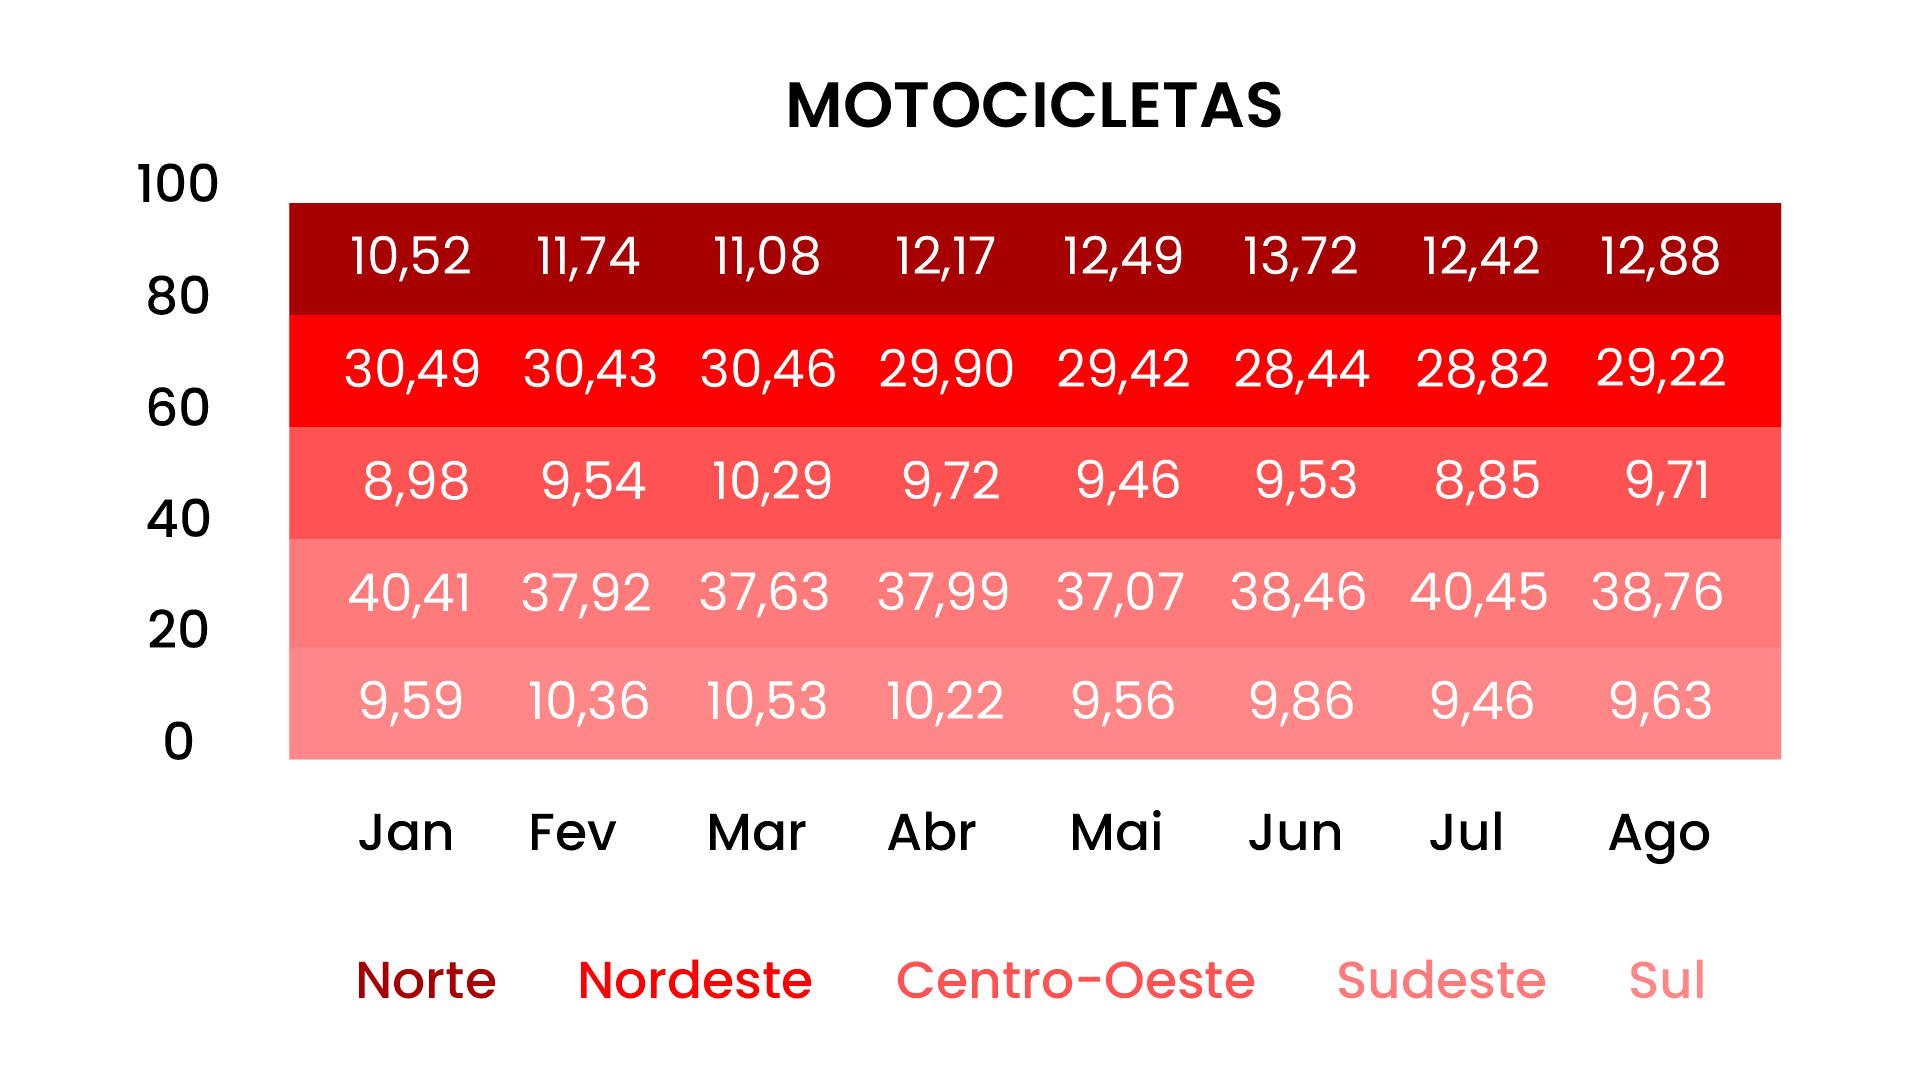 Tabela com o ranking de emplacamento por regiões, com um comparativo entre janeiro e agosto